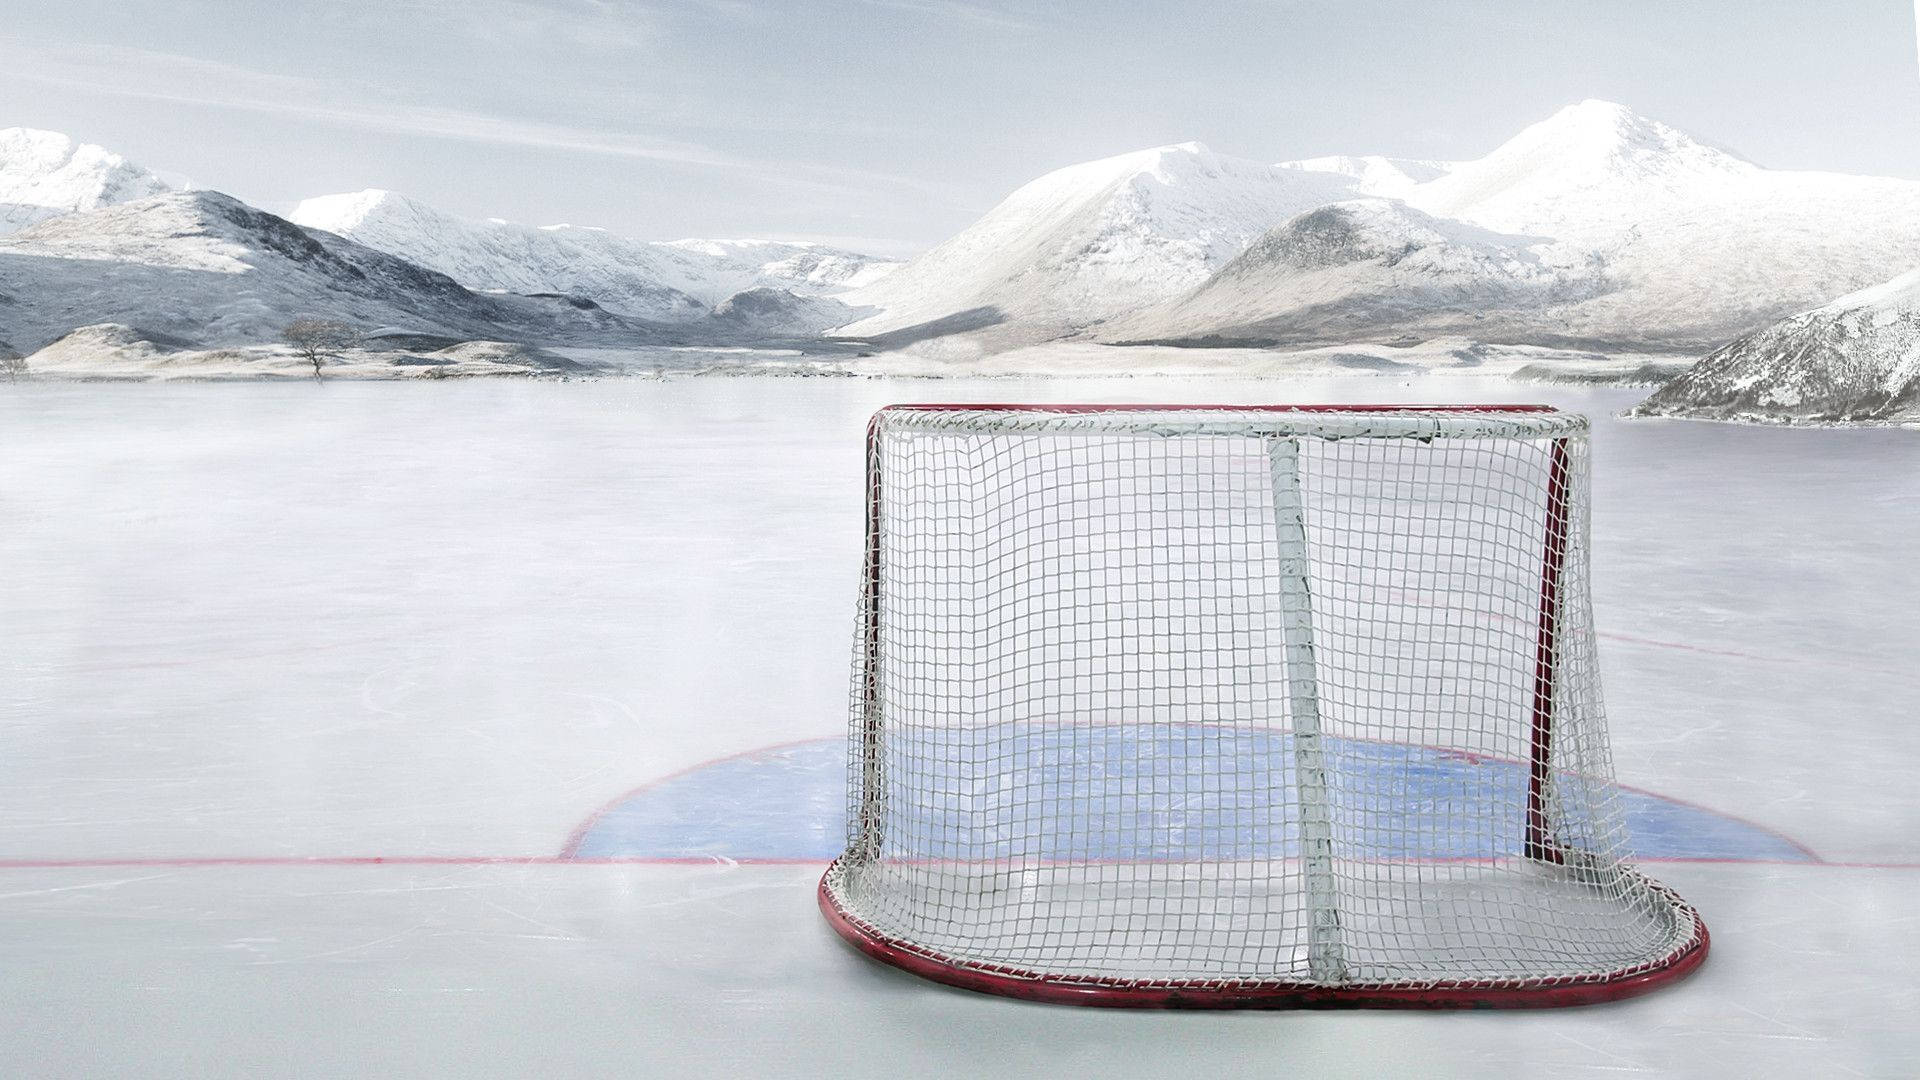 Puertade Hockey Sobre Hielo En La Nieve. Fondo de pantalla